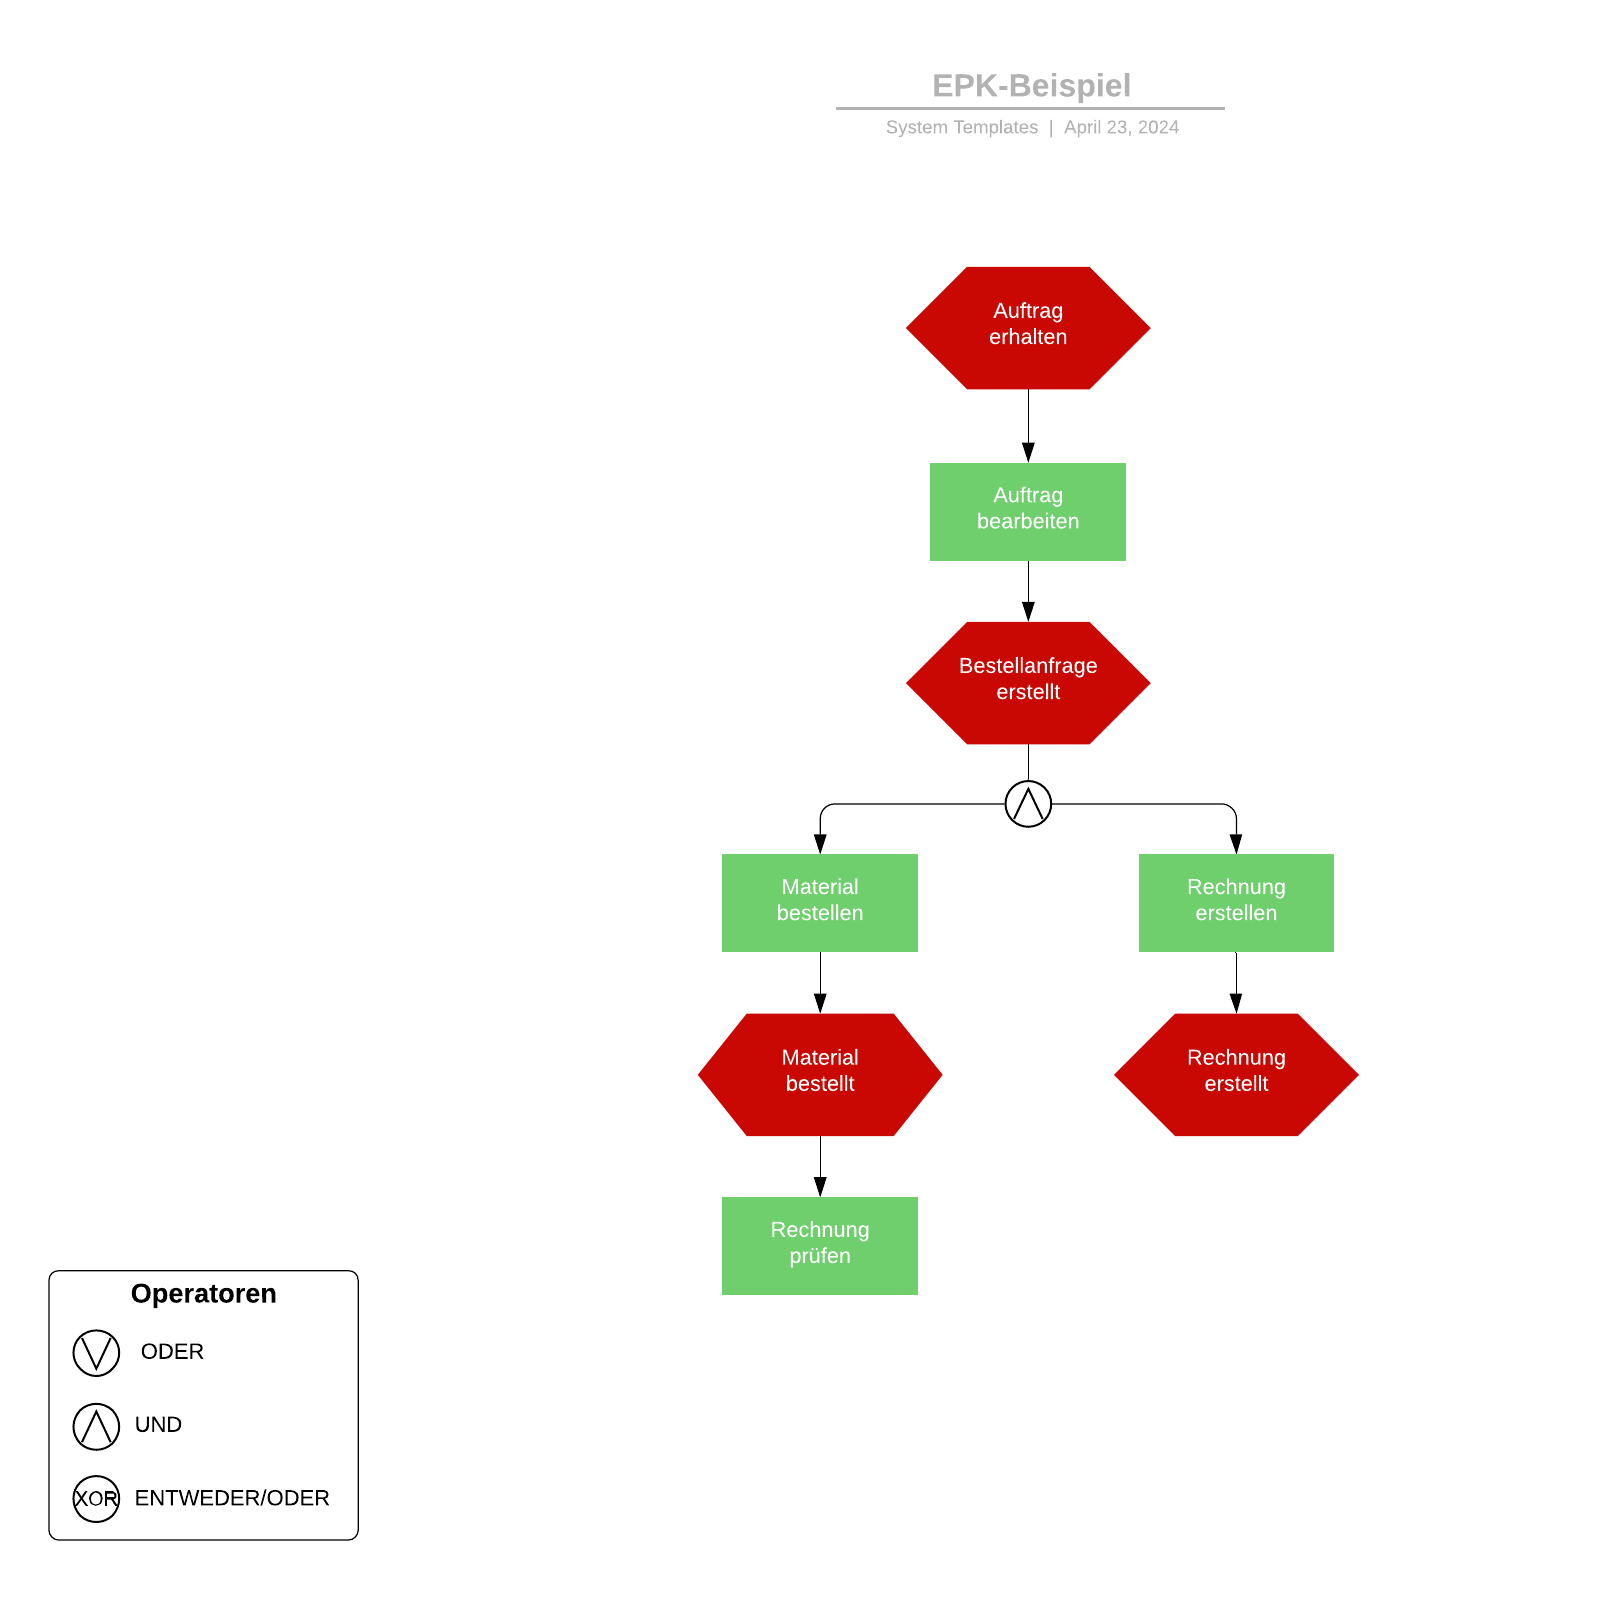 Ereignisgesteuerte Prozesskette (EPK) - Beispiel